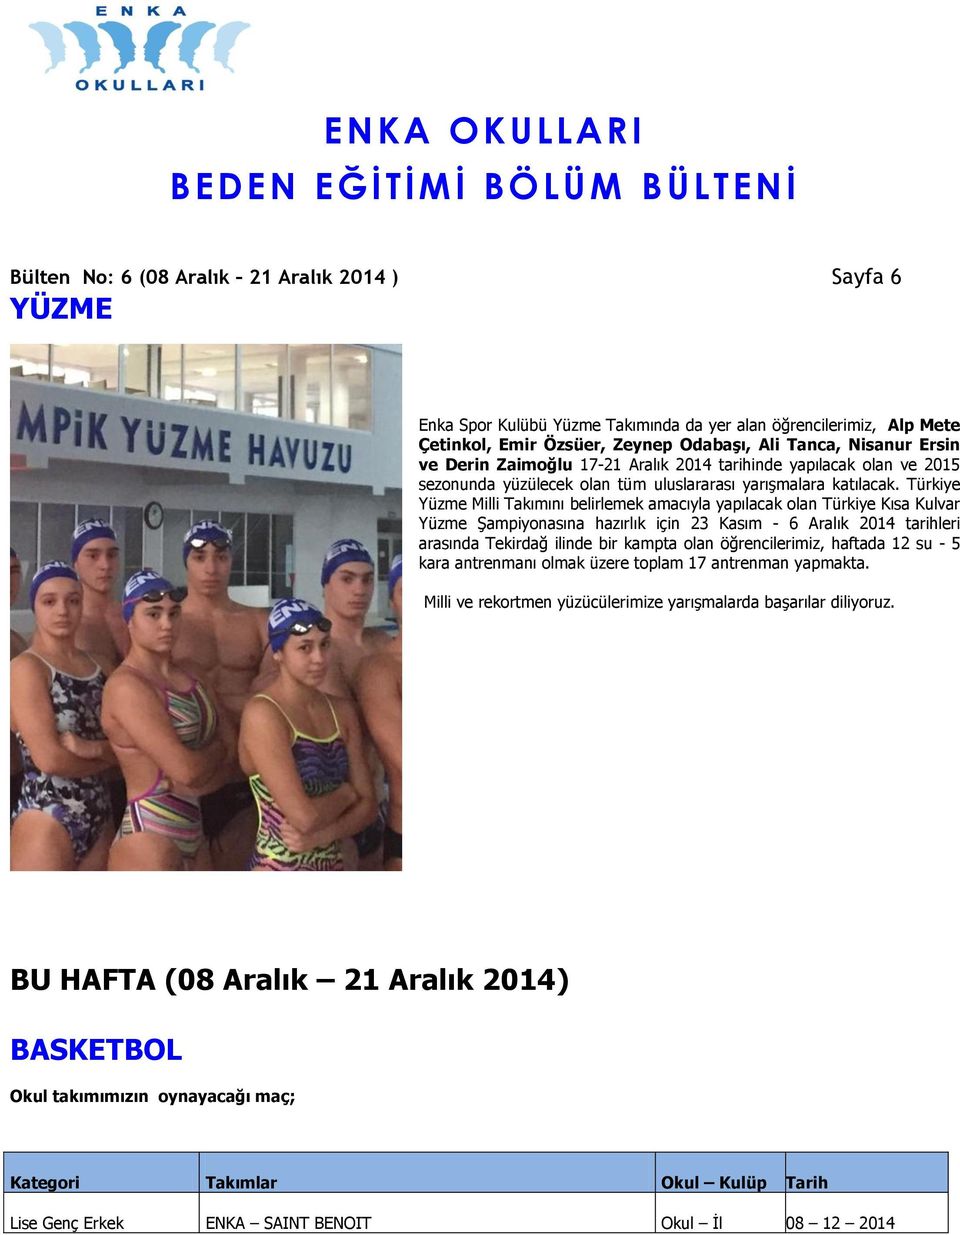 Türkiye Yüzme Milli Takımını belirlemek amacıyla yapılacak olan Türkiye Kısa Kulvar Yüzme Şampiyonasına hazırlık için 23 Kasım - 6 Aralık 2014 tarihleri arasında Tekirdağ ilinde bir kampta olan